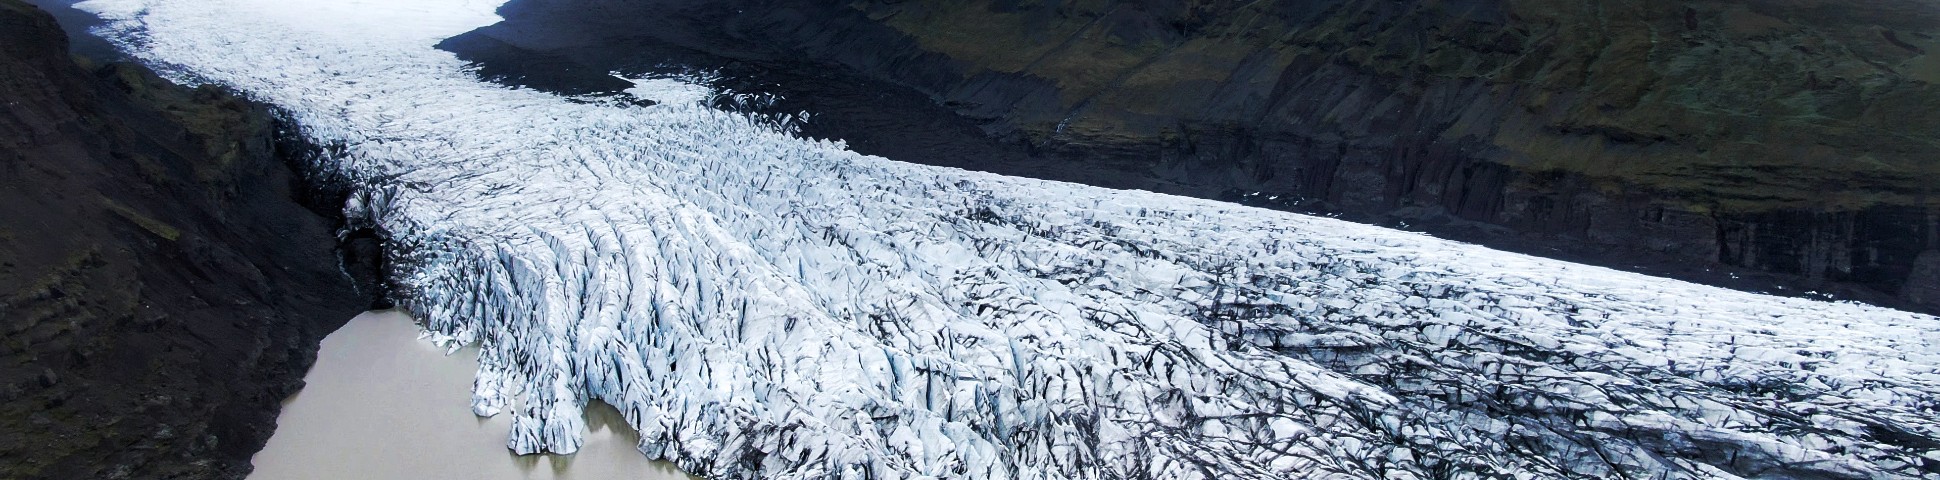 Vatnajokull Glacier view in Iceland